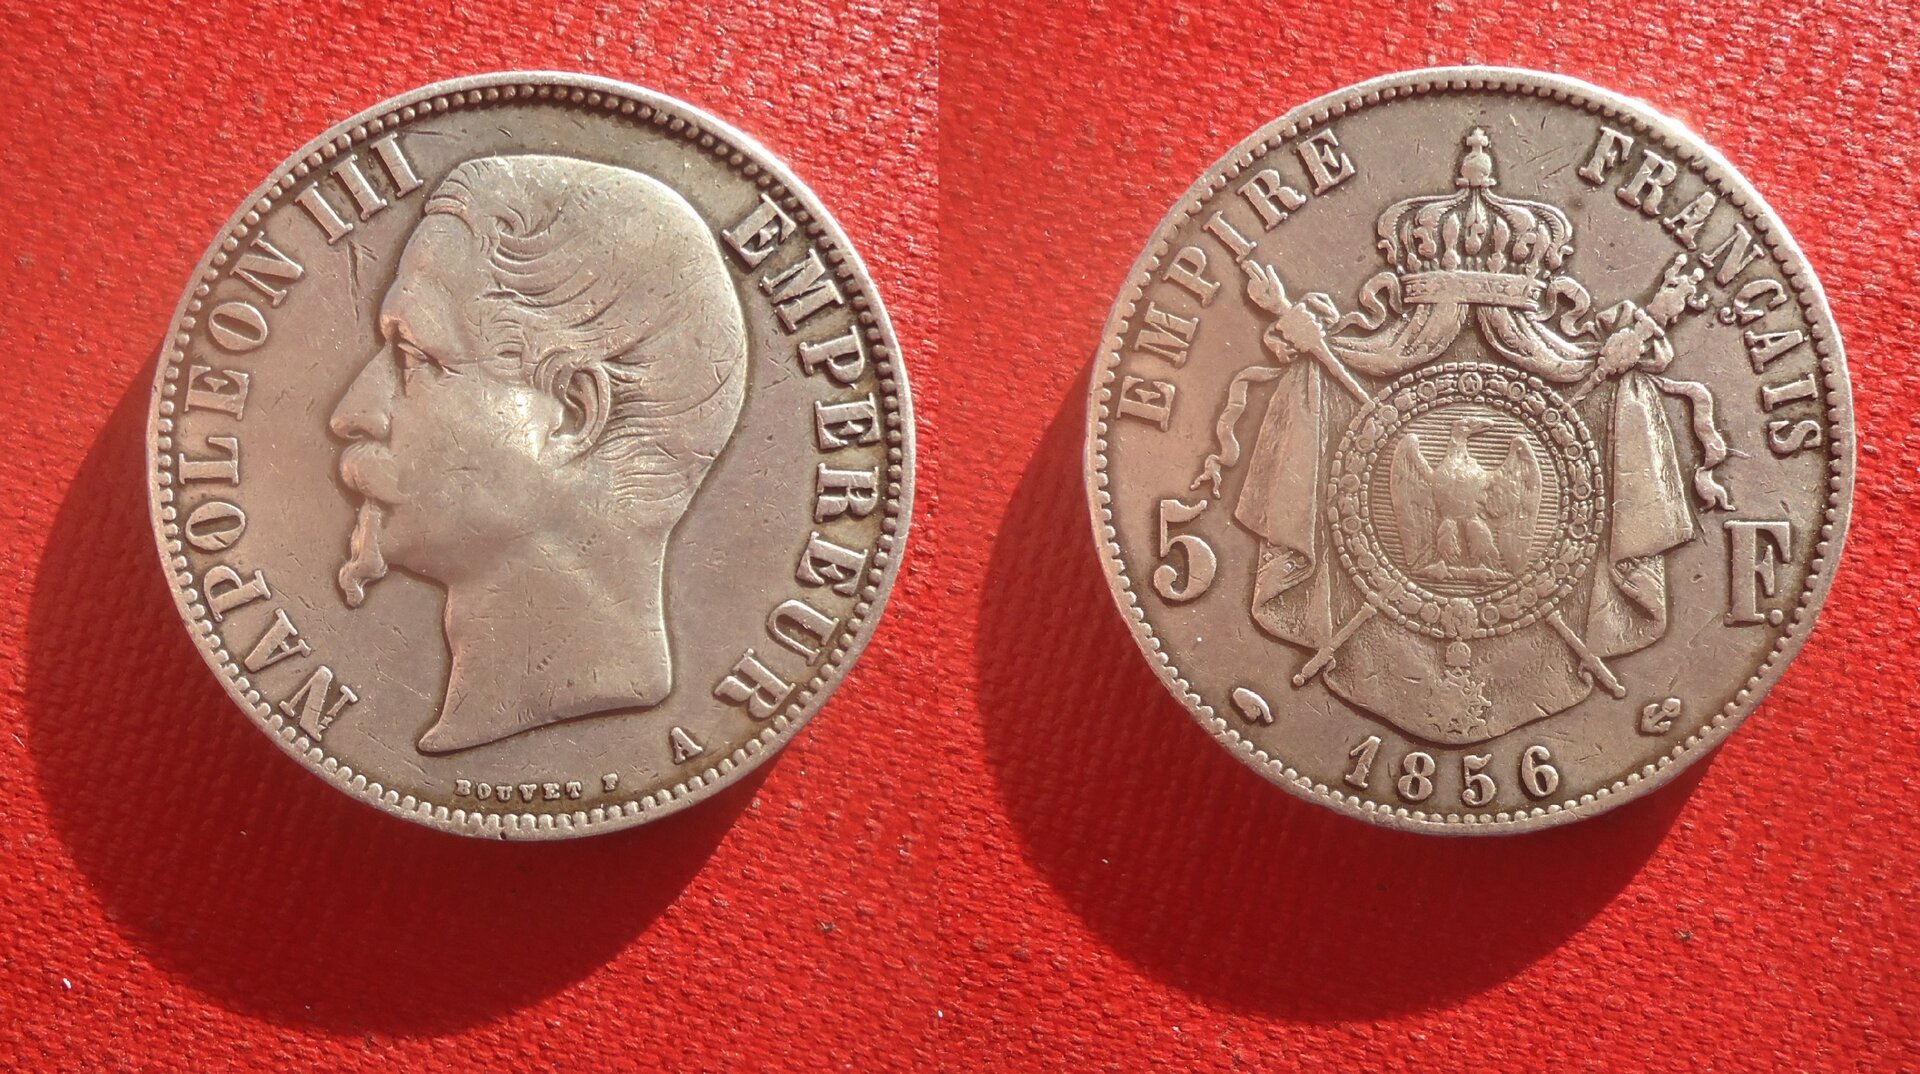 France - 1856 A 5 francs Nov 2021 (0).jpg